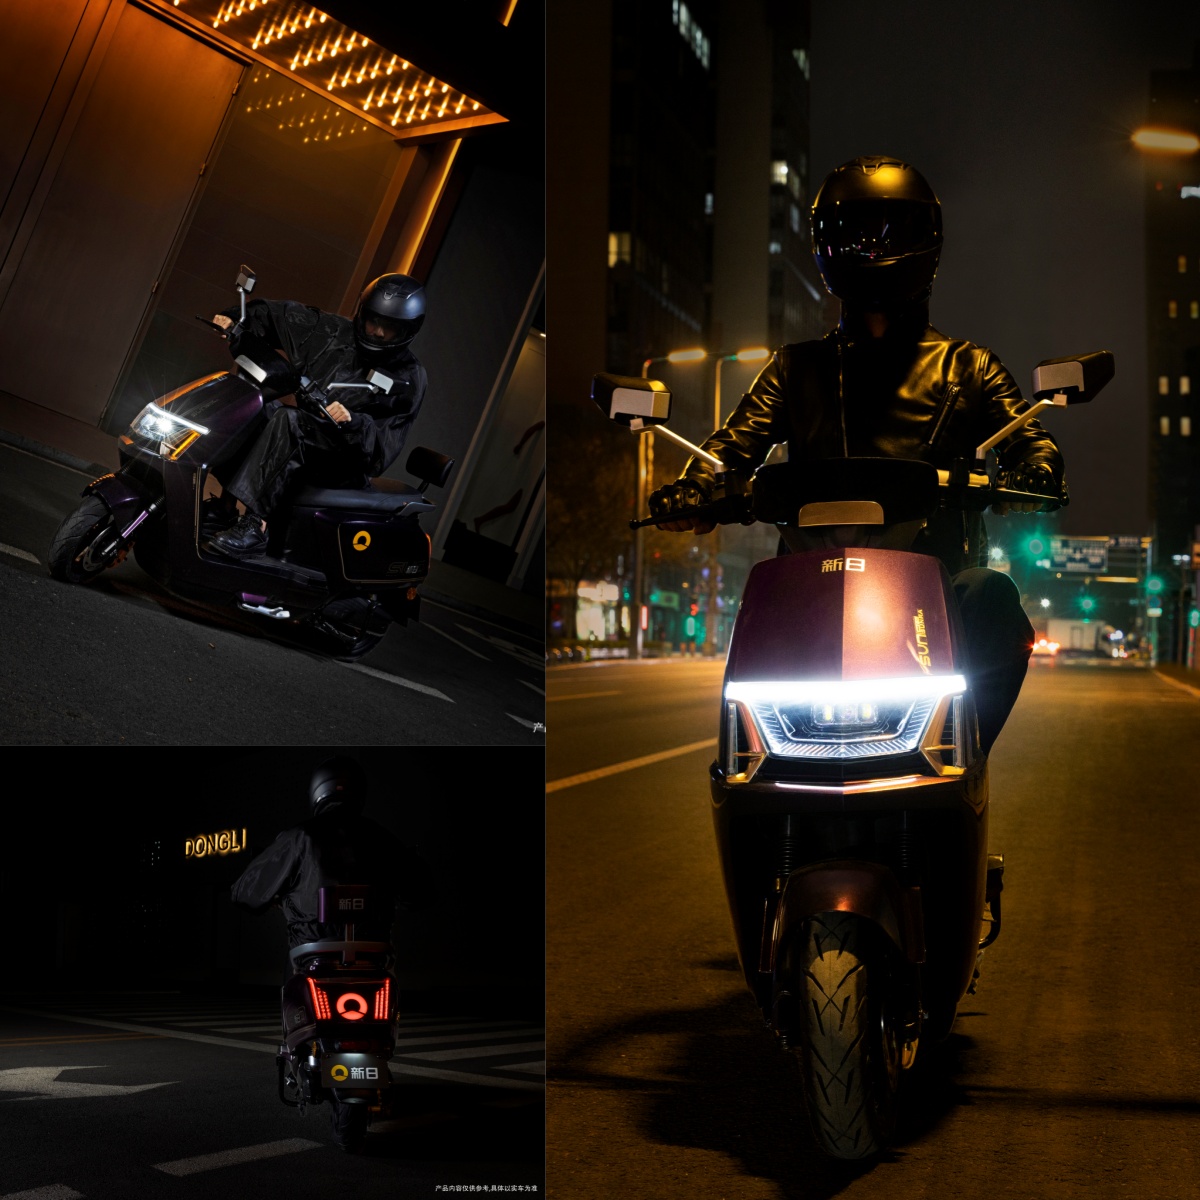 夜晚开着灯的摩托车中度可信度描述已自动生成